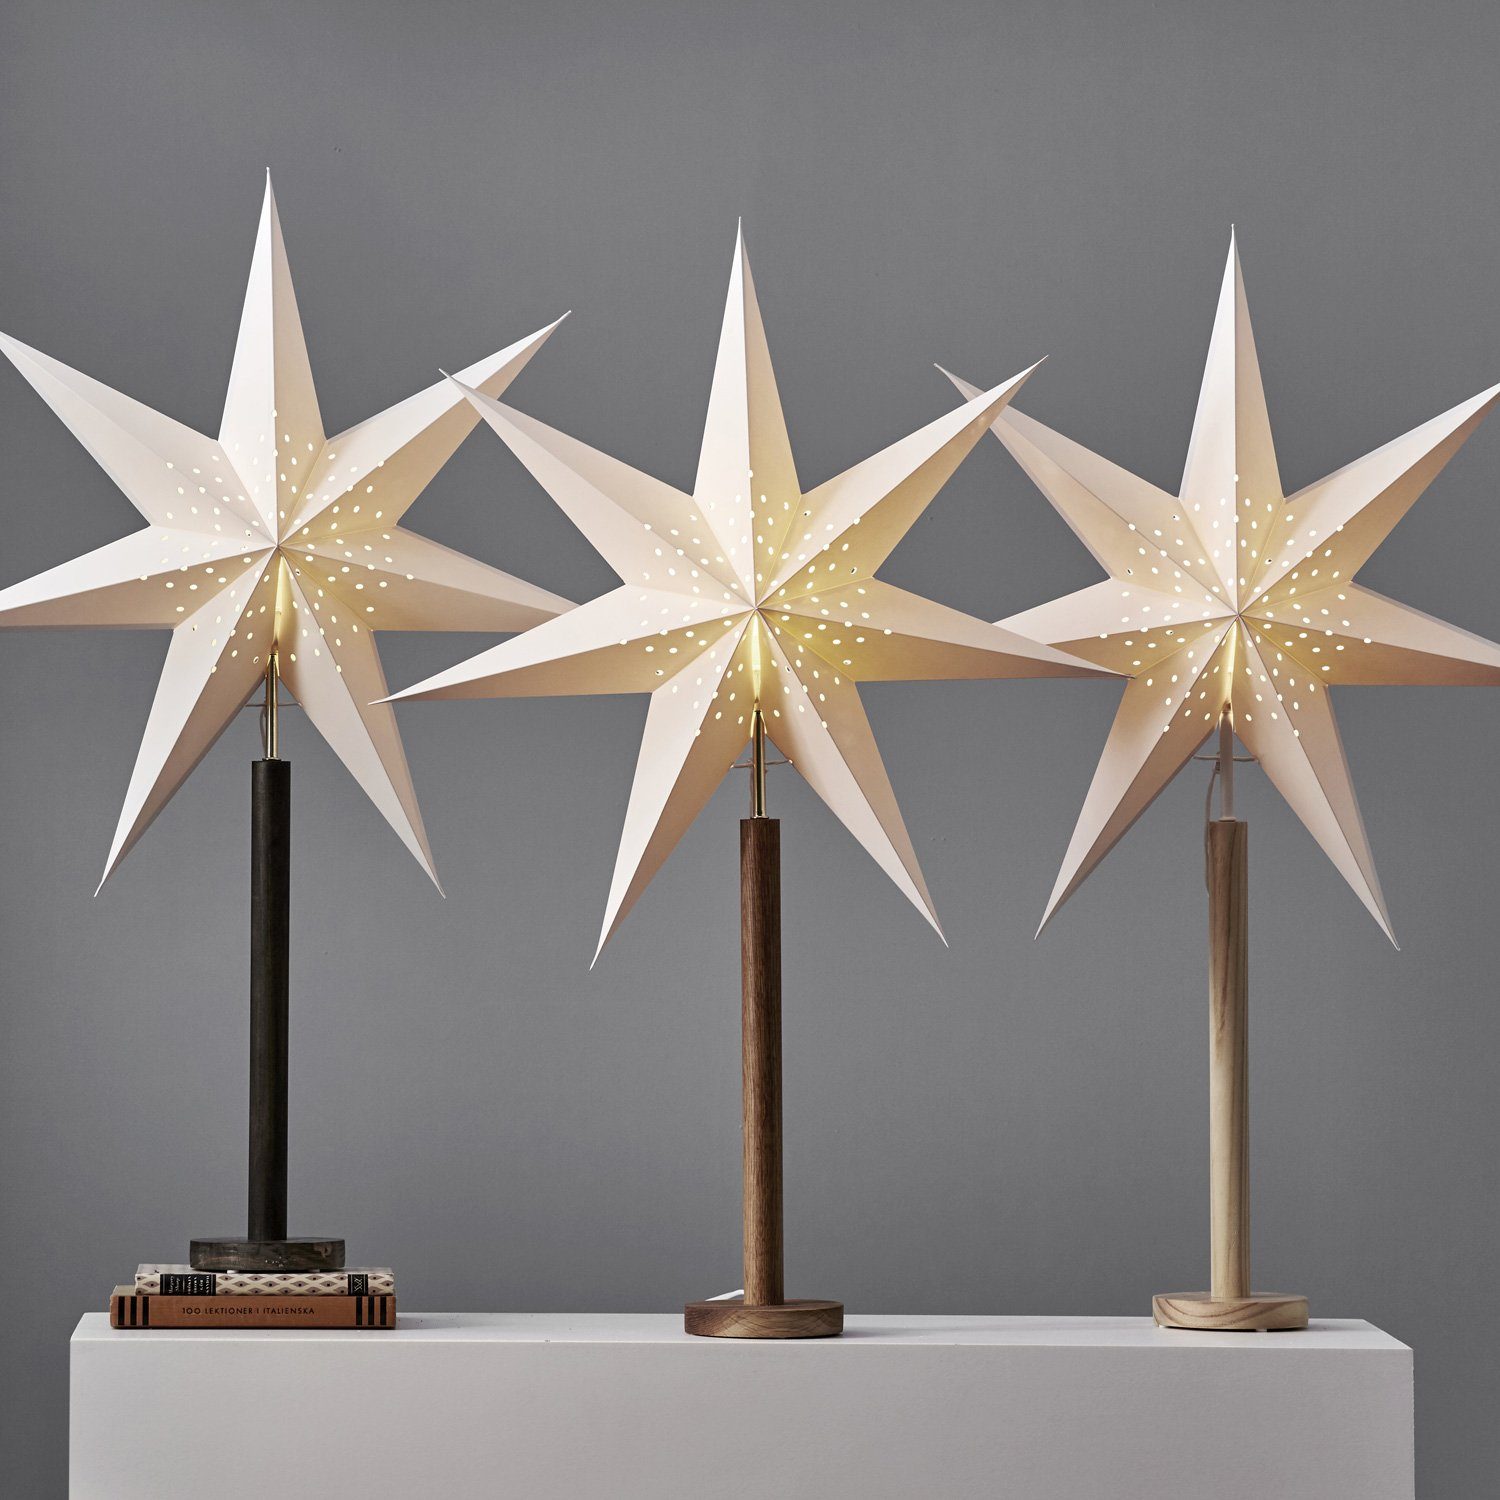 Weihnachtsstern TRADING 7-zackig E14 stehend natur Papierstern Stern 60cm STAR weiß LED